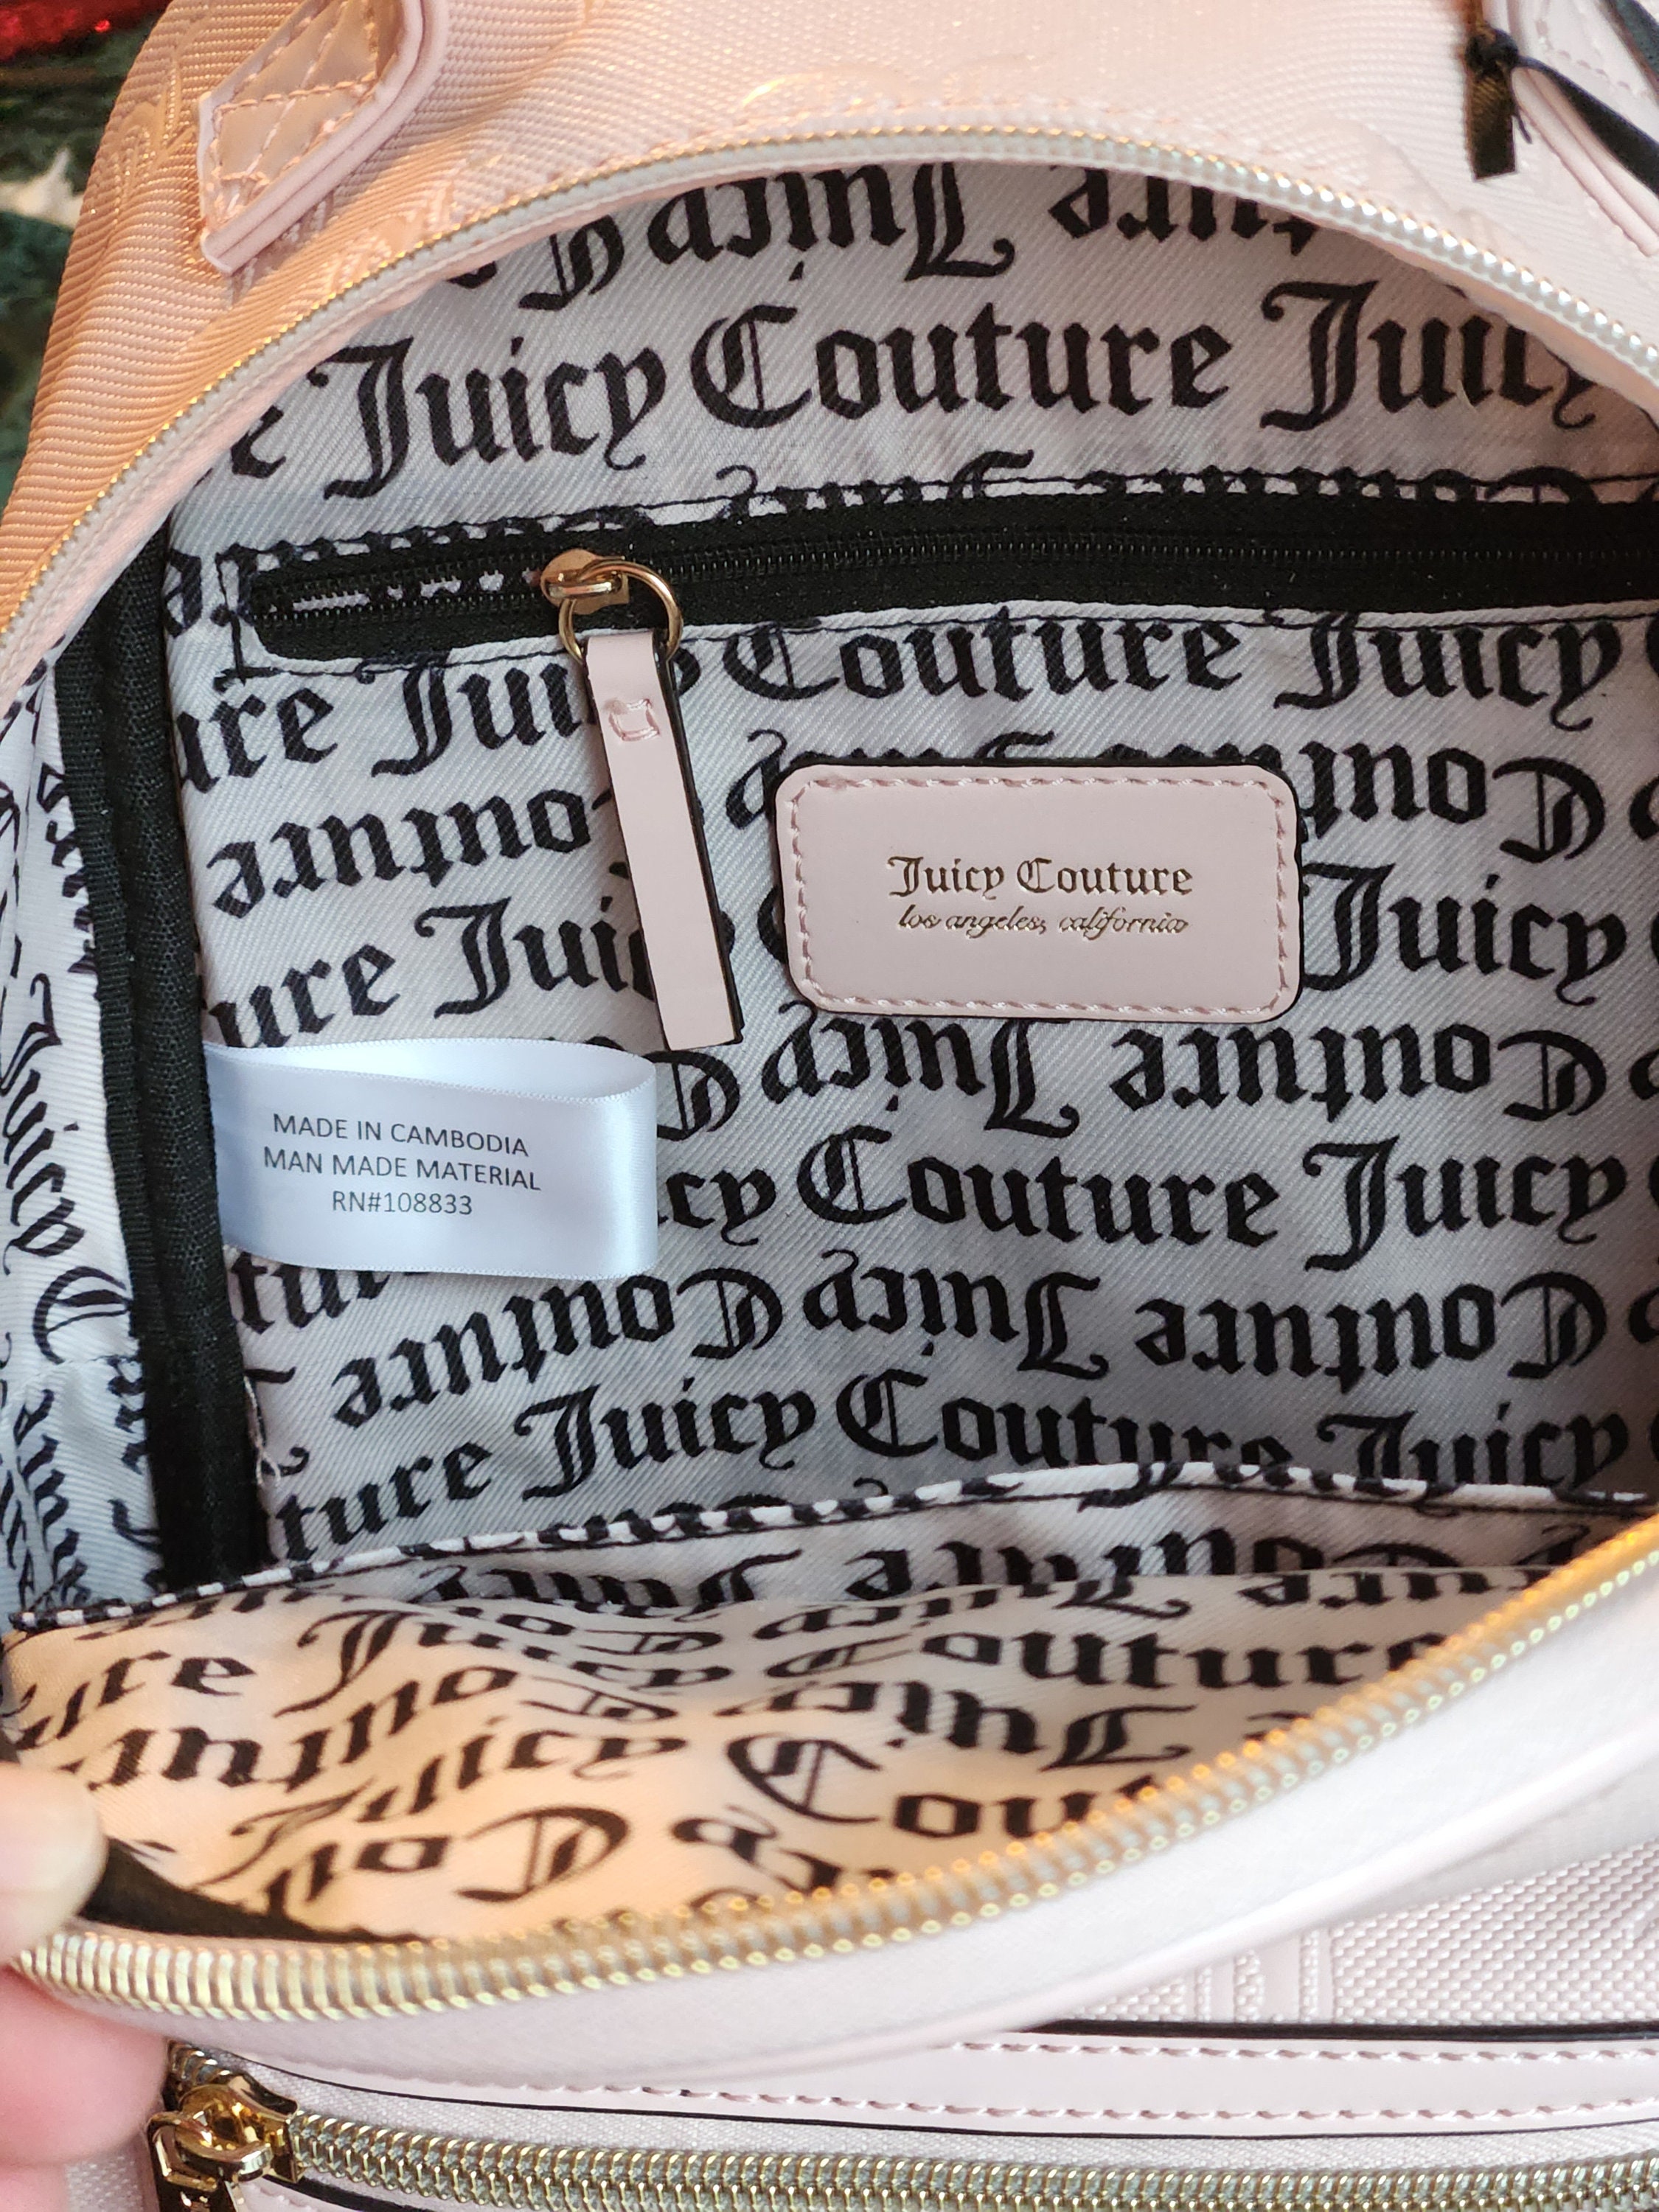 Juicy Couture Pecan White Rosie Mini Backpack Fancy Cute Weekender